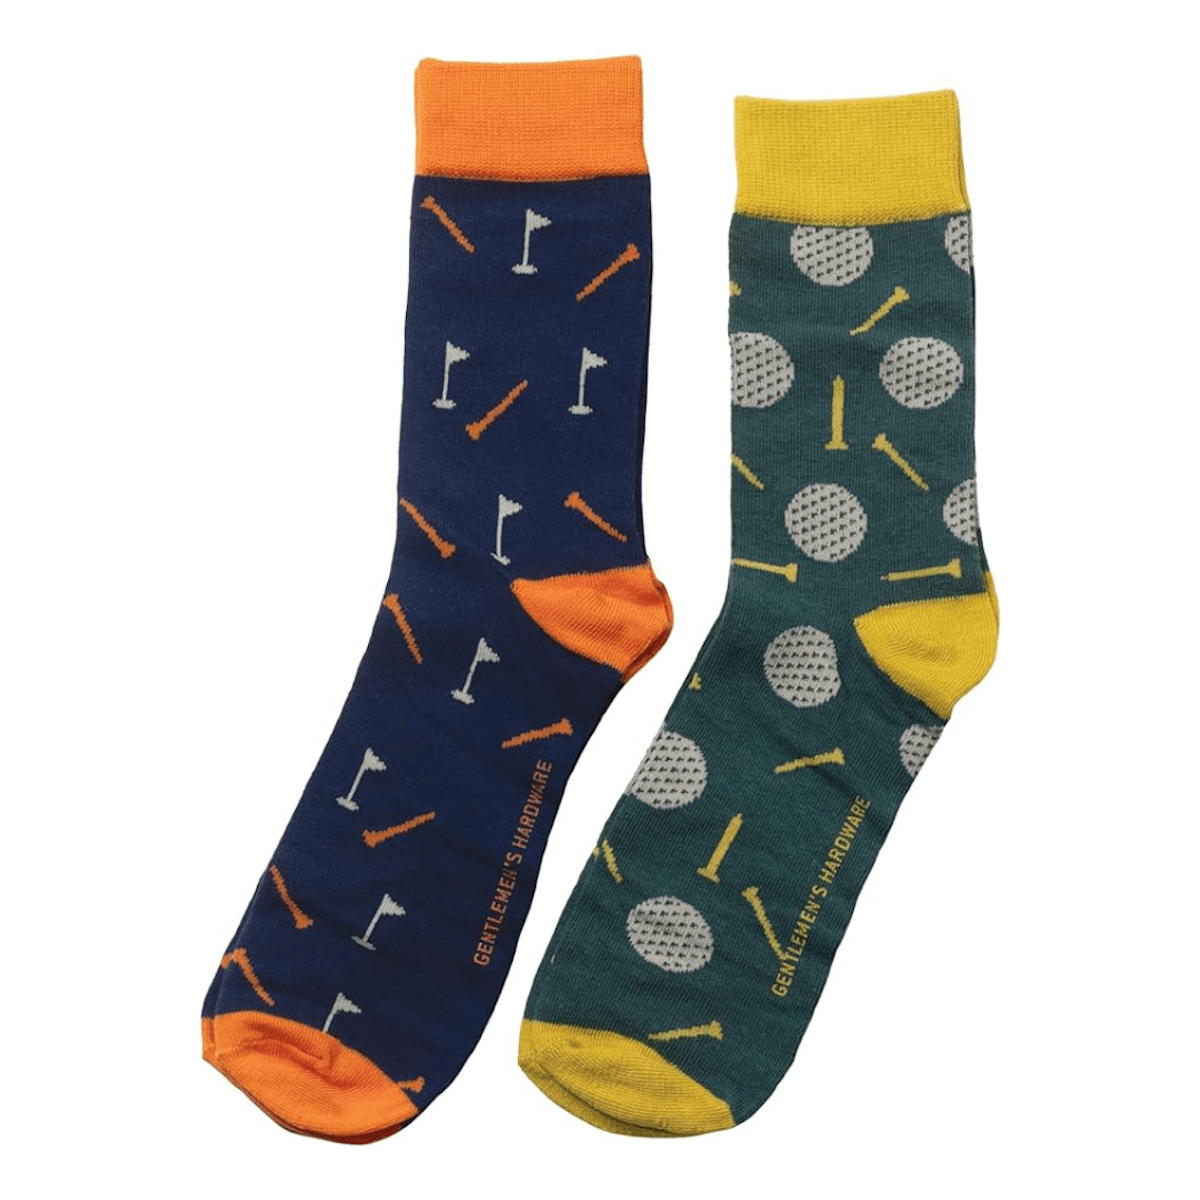 Gentlemen's Hardware Socks Set of 2 Gift Boxed Golfing Socks